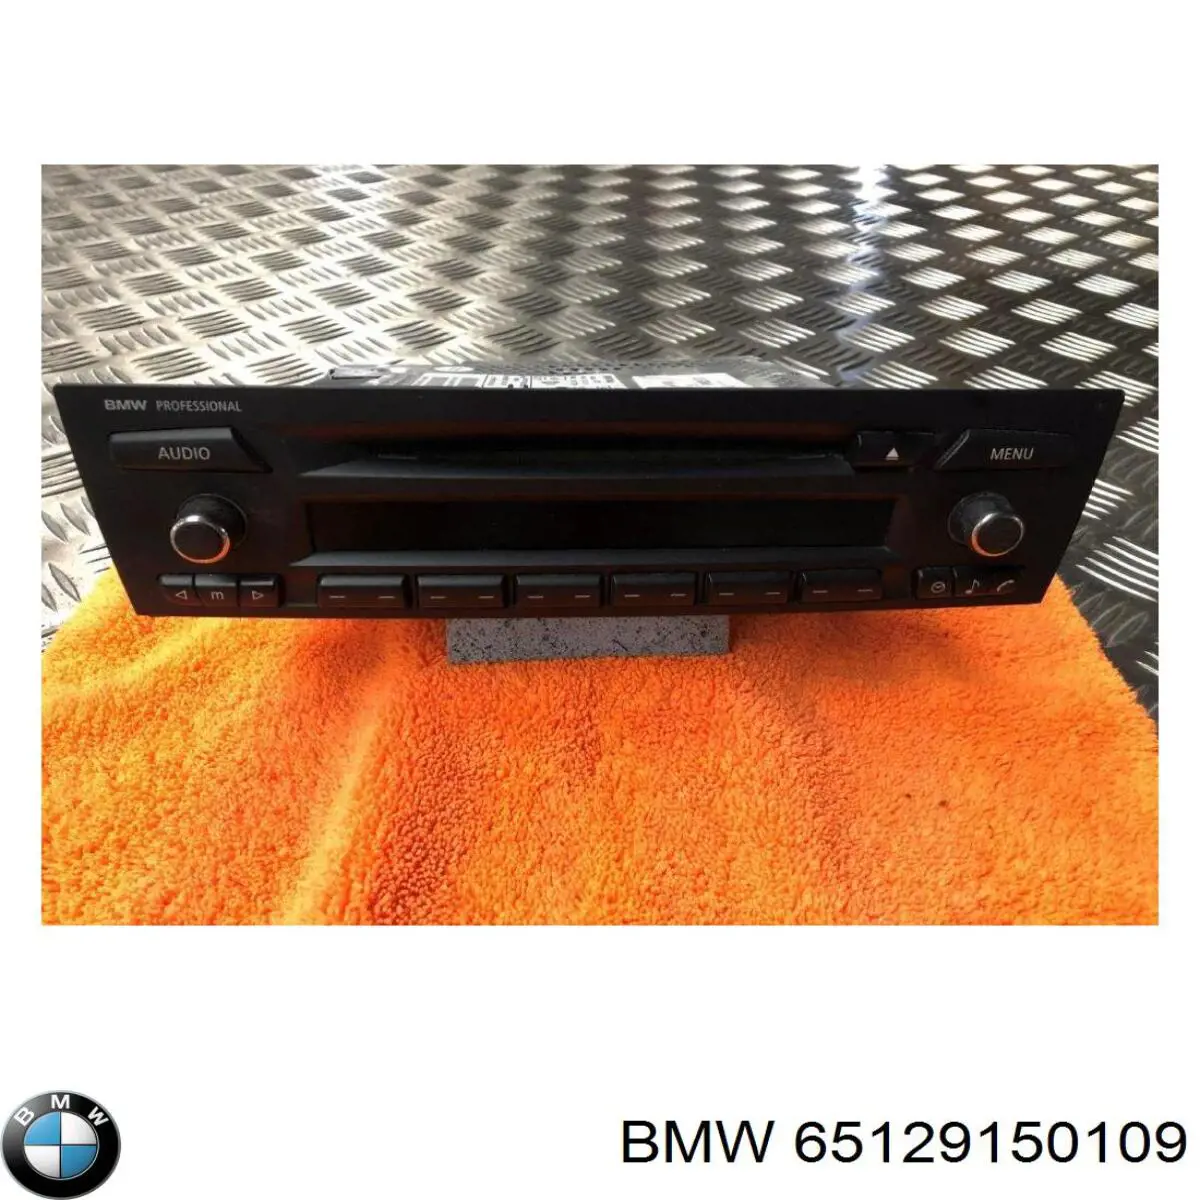 65126983018 BMW radio (radio am/fm)